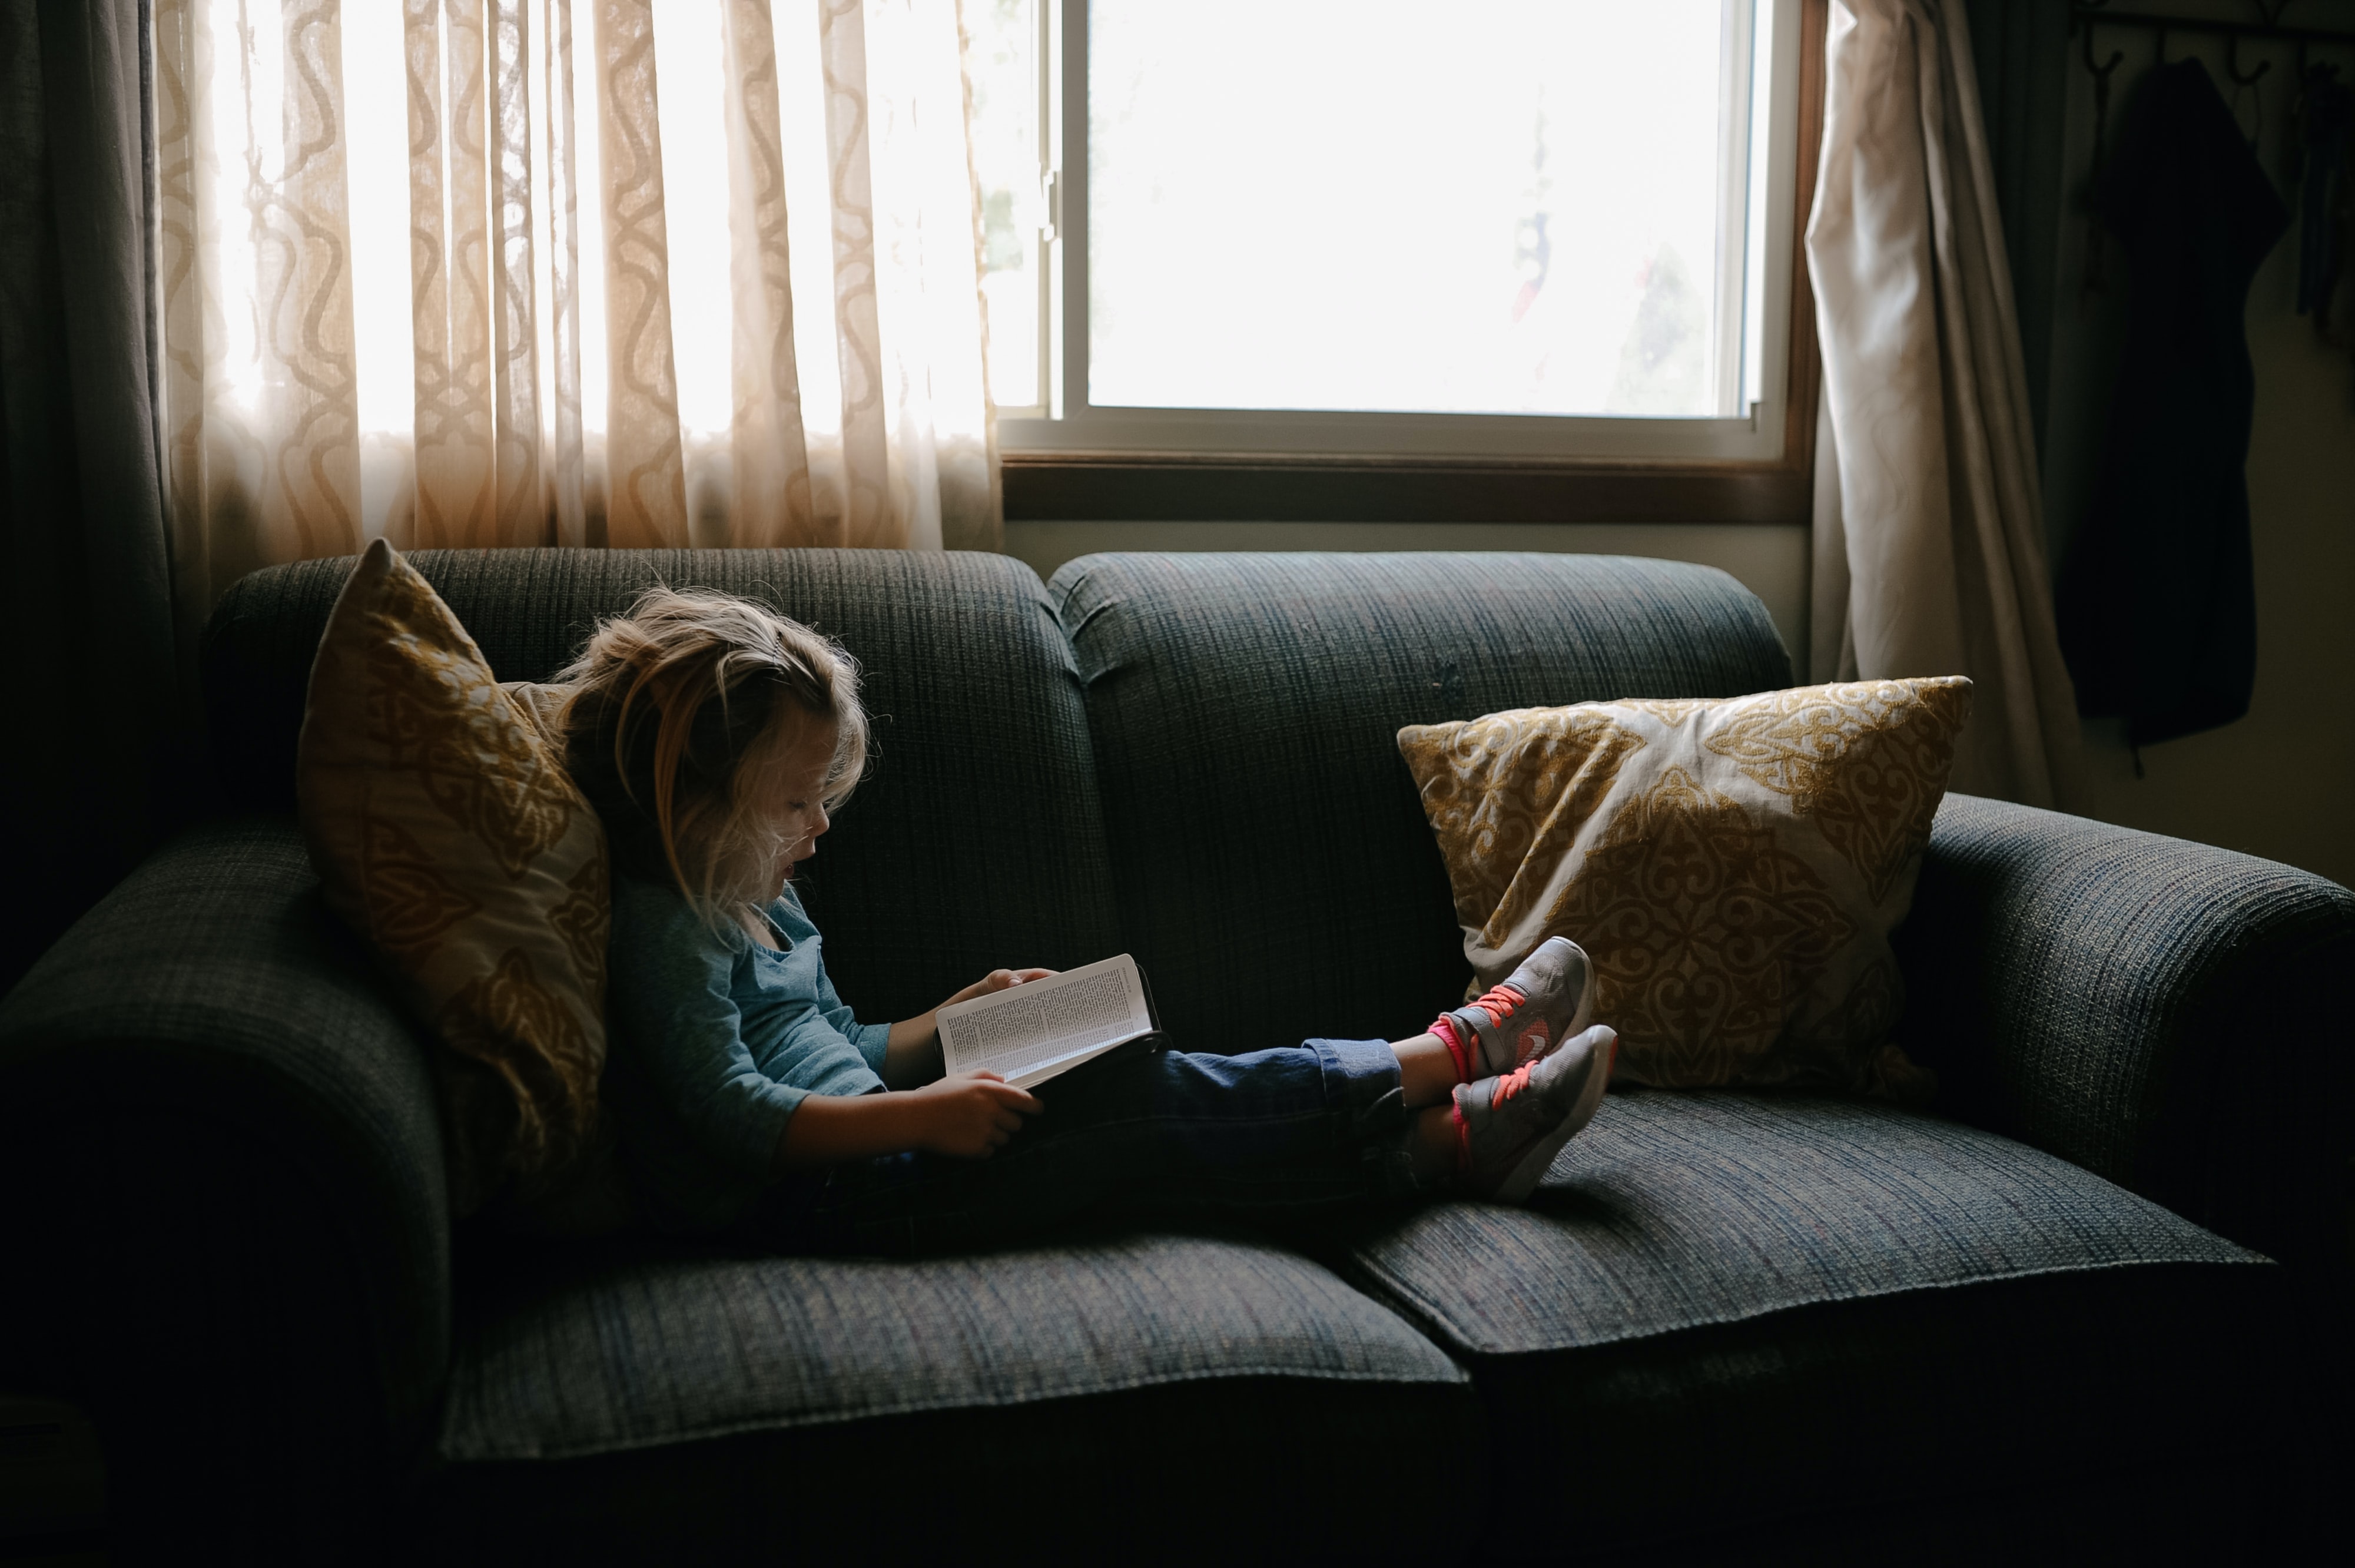 La lectura tiene un papel fundamental en las personas desde temprana edad. (Foto Prensa Libre: Unsplash)